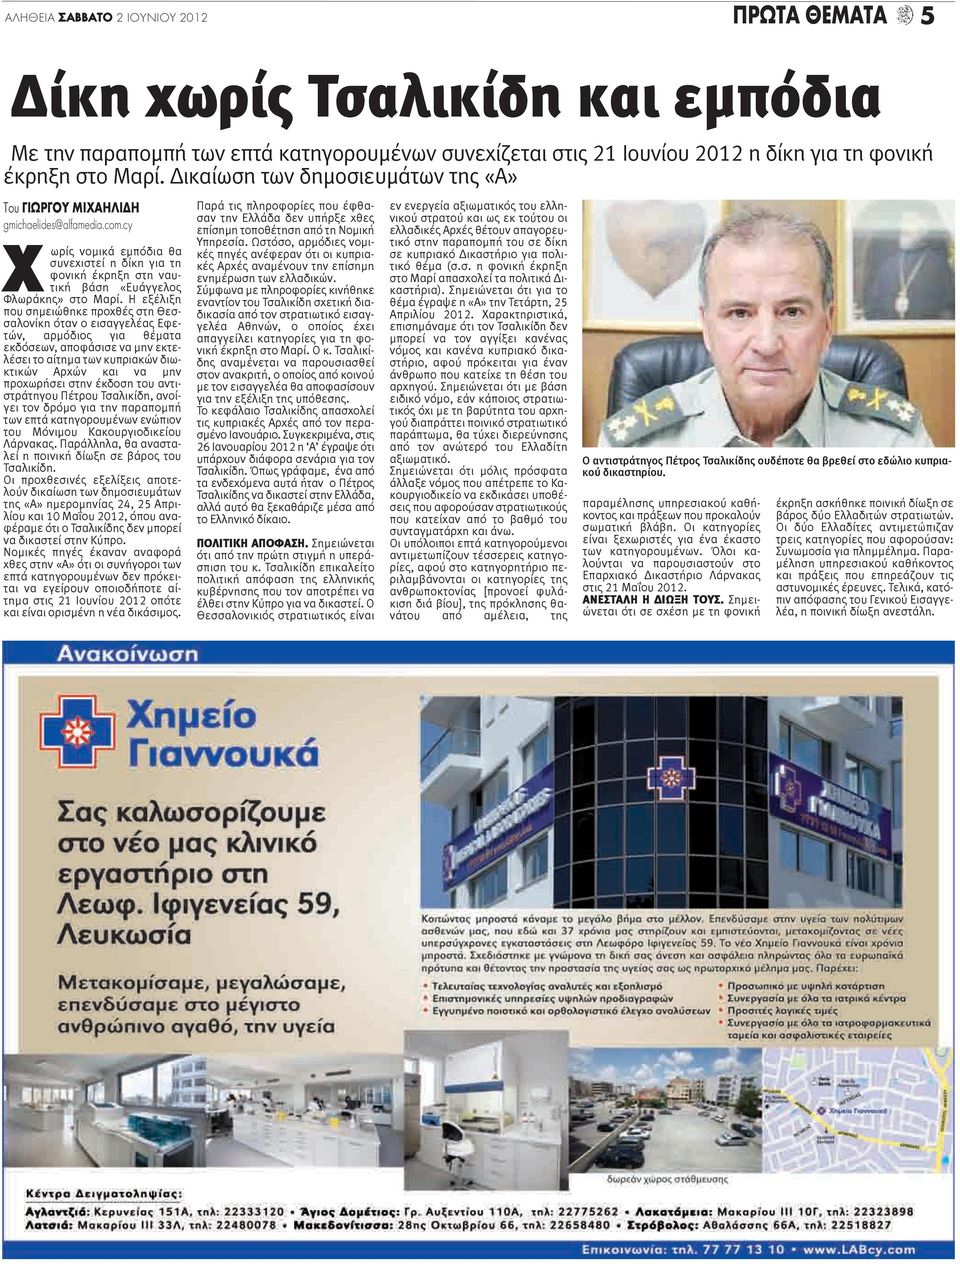 Η εξέλιξη που σημειώθηκε προχθές στη Θεσσαλονίκη όταν ο εισαγγελέας Εφετών, αρμόδιος για θέματα εκδόσεων, αποφάσισε να μην εκτελέσει το αίτημα των κυπριακών διωκτικών Αρχών και να μην προχωρήσει στην